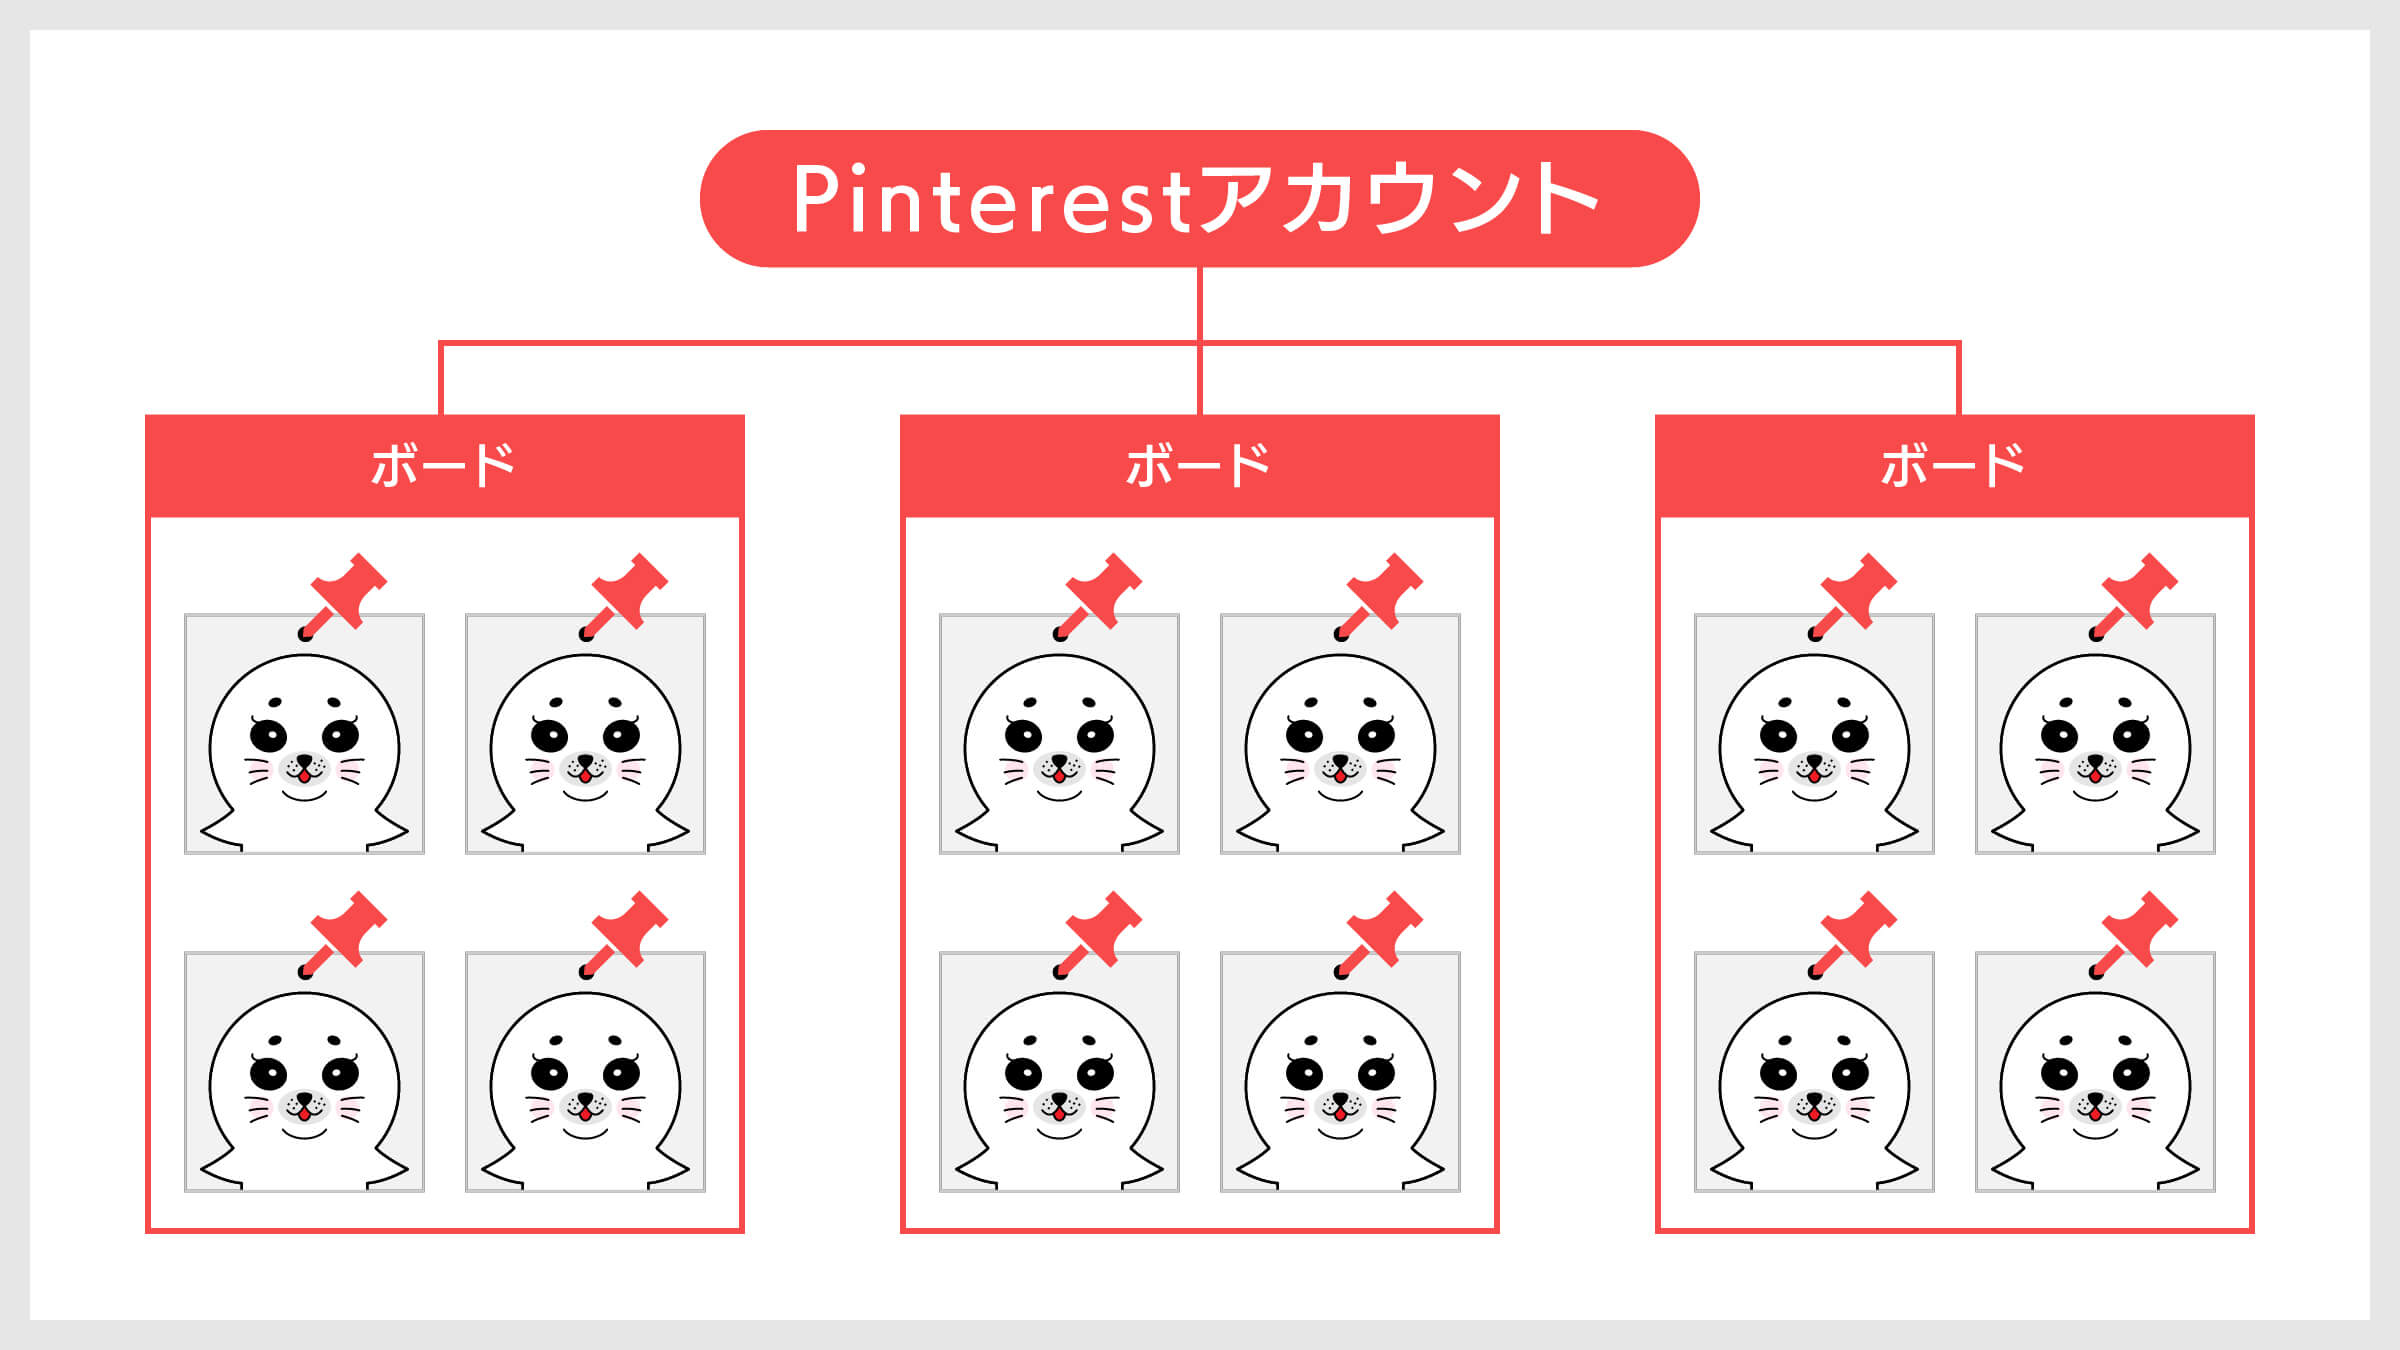 Pinterestのボードとは、ピンを整理して保存するための「カテゴリフォルダ」のことです。